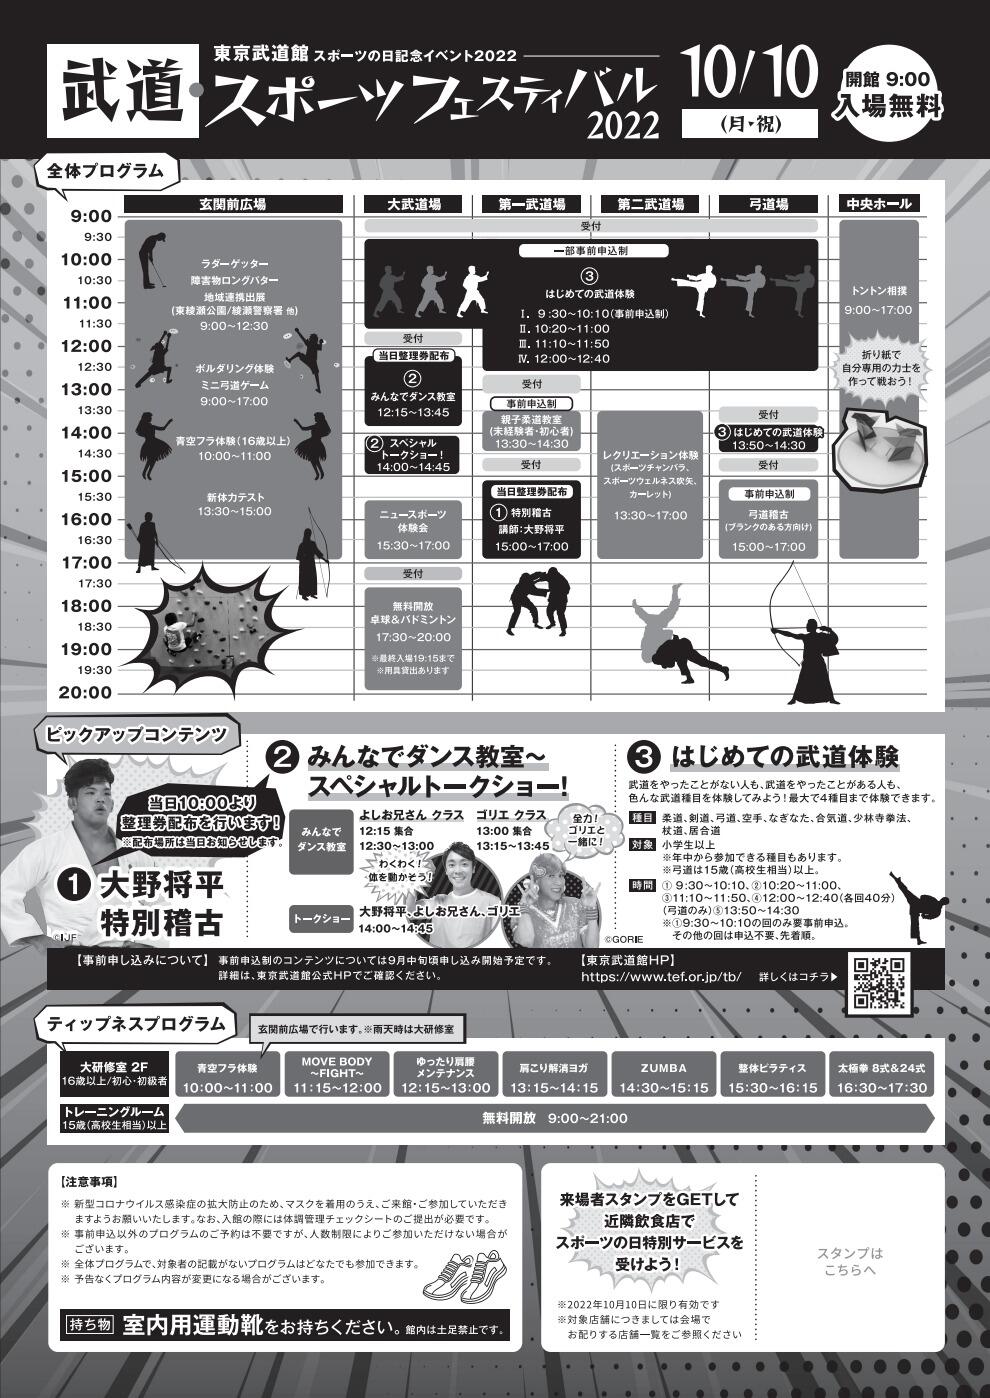 武道・スポーツフェスティバル2022「はじめての武道体験」【杖道】